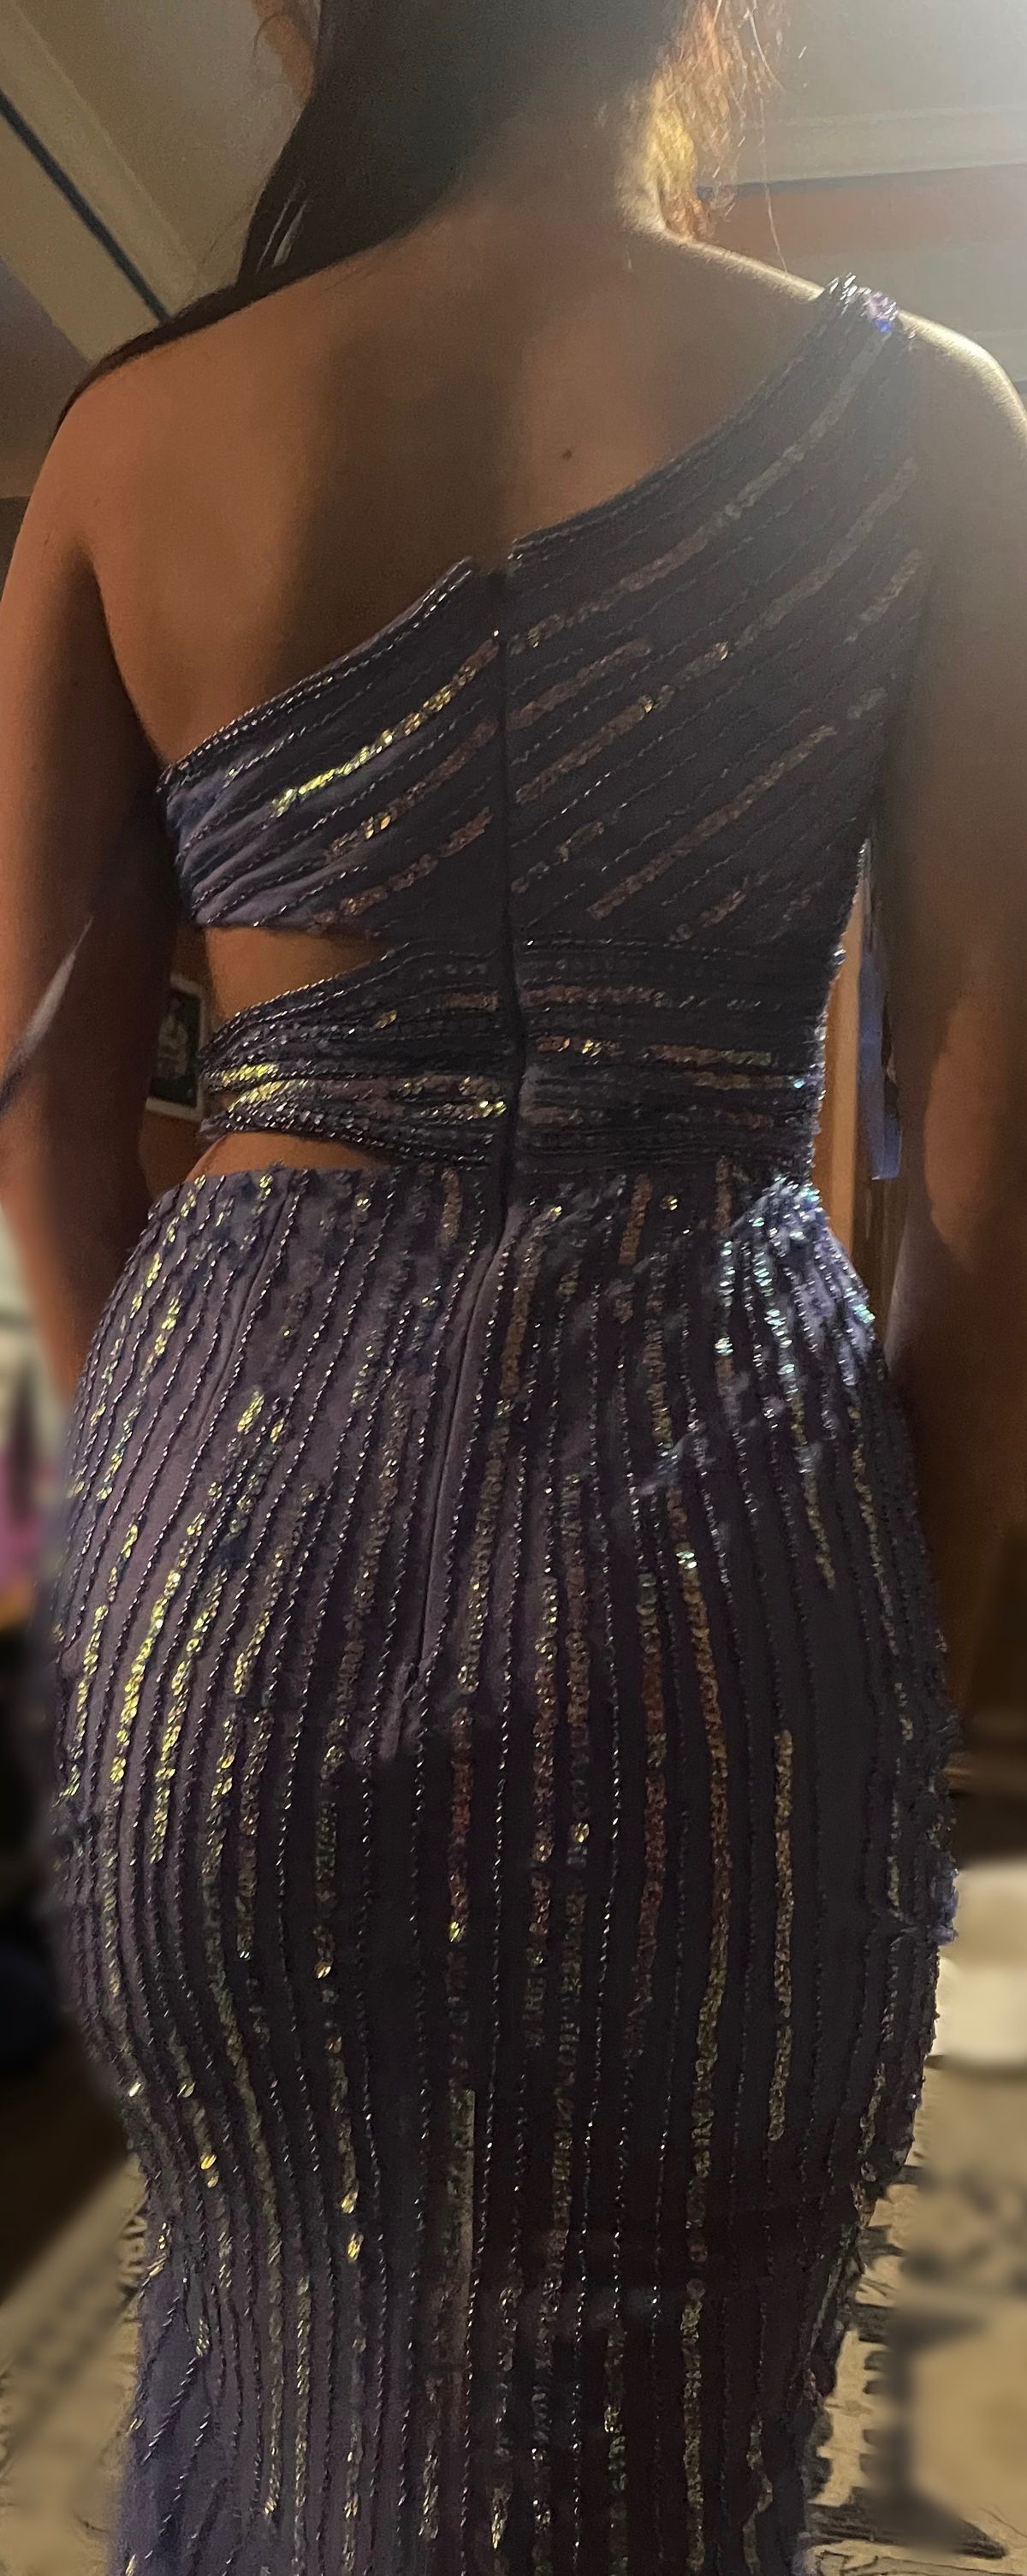 Ashley Lauren Size 4 Prom One Shoulder Light Blue Side Slit Dress on Queenly